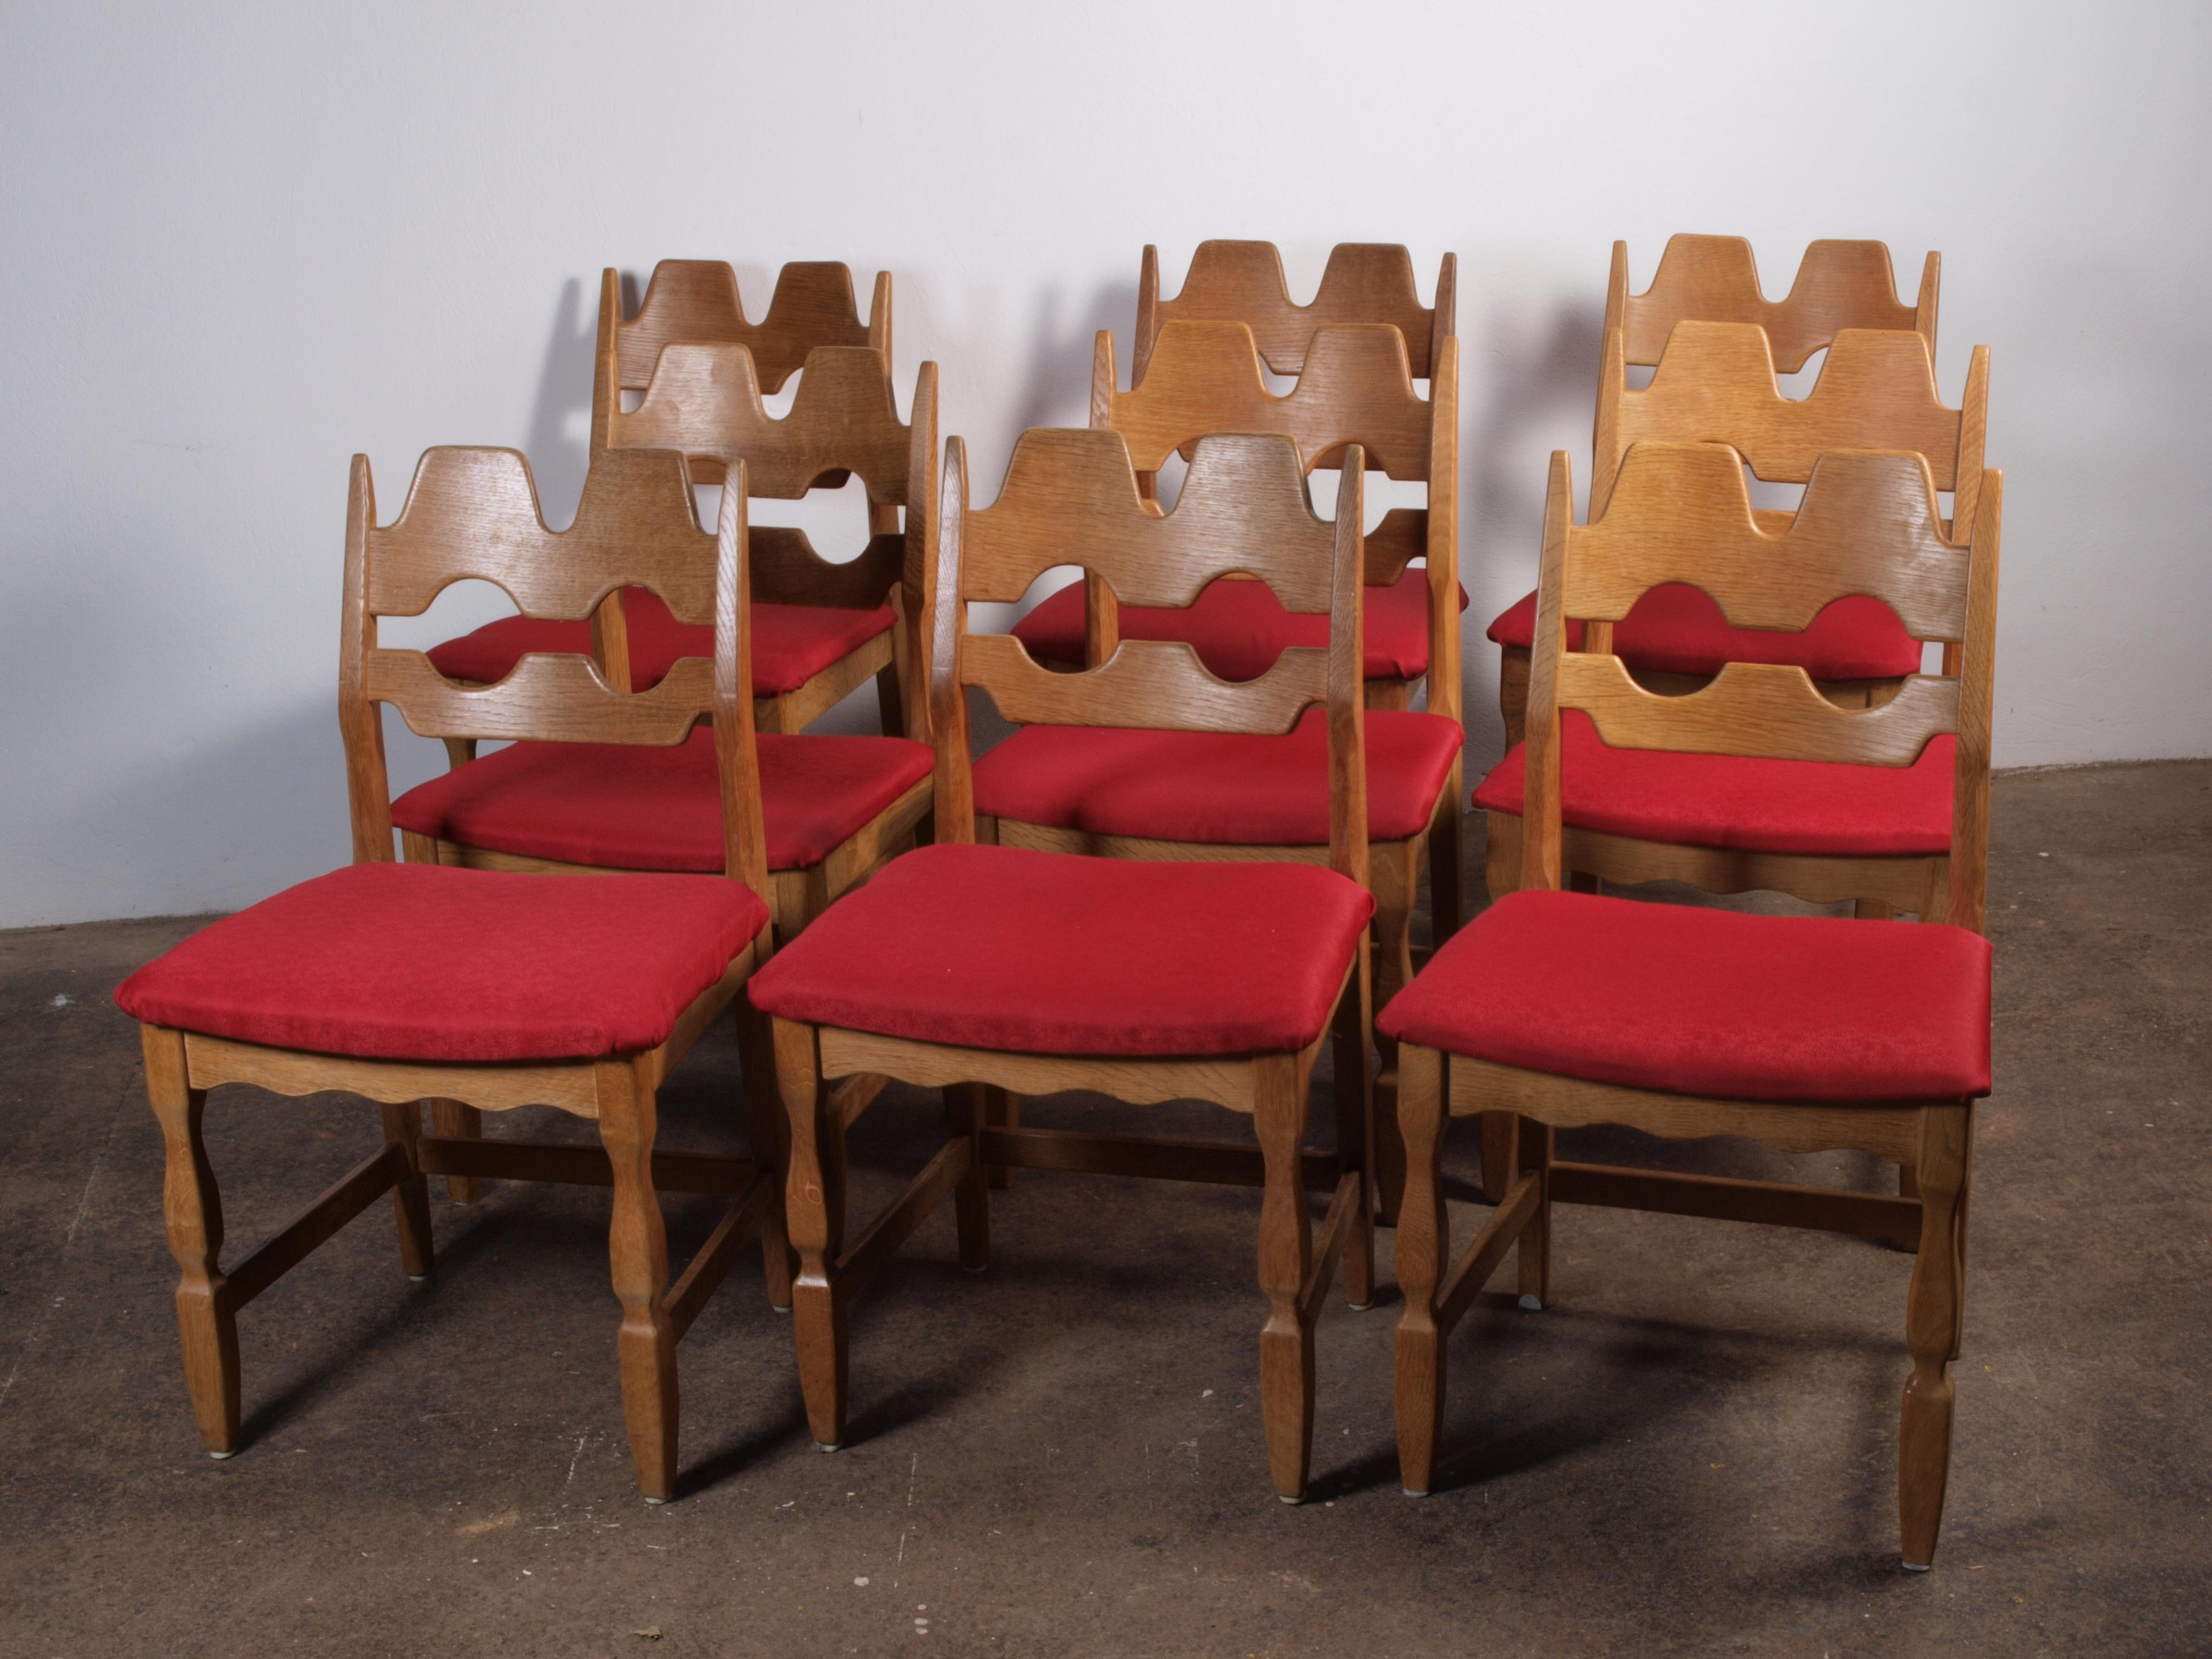 Die markanten Esszimmerstühle von Henning Kjærnulf sind aus Eichenholz gefertigt und zeigen eine fesselnde Mischung aus Barock und Mid-Century Modern. Diese klassischen Stühle, die als Razorblade-Modell bekannt sind, wurden von der Nyrup Møbelfabrik